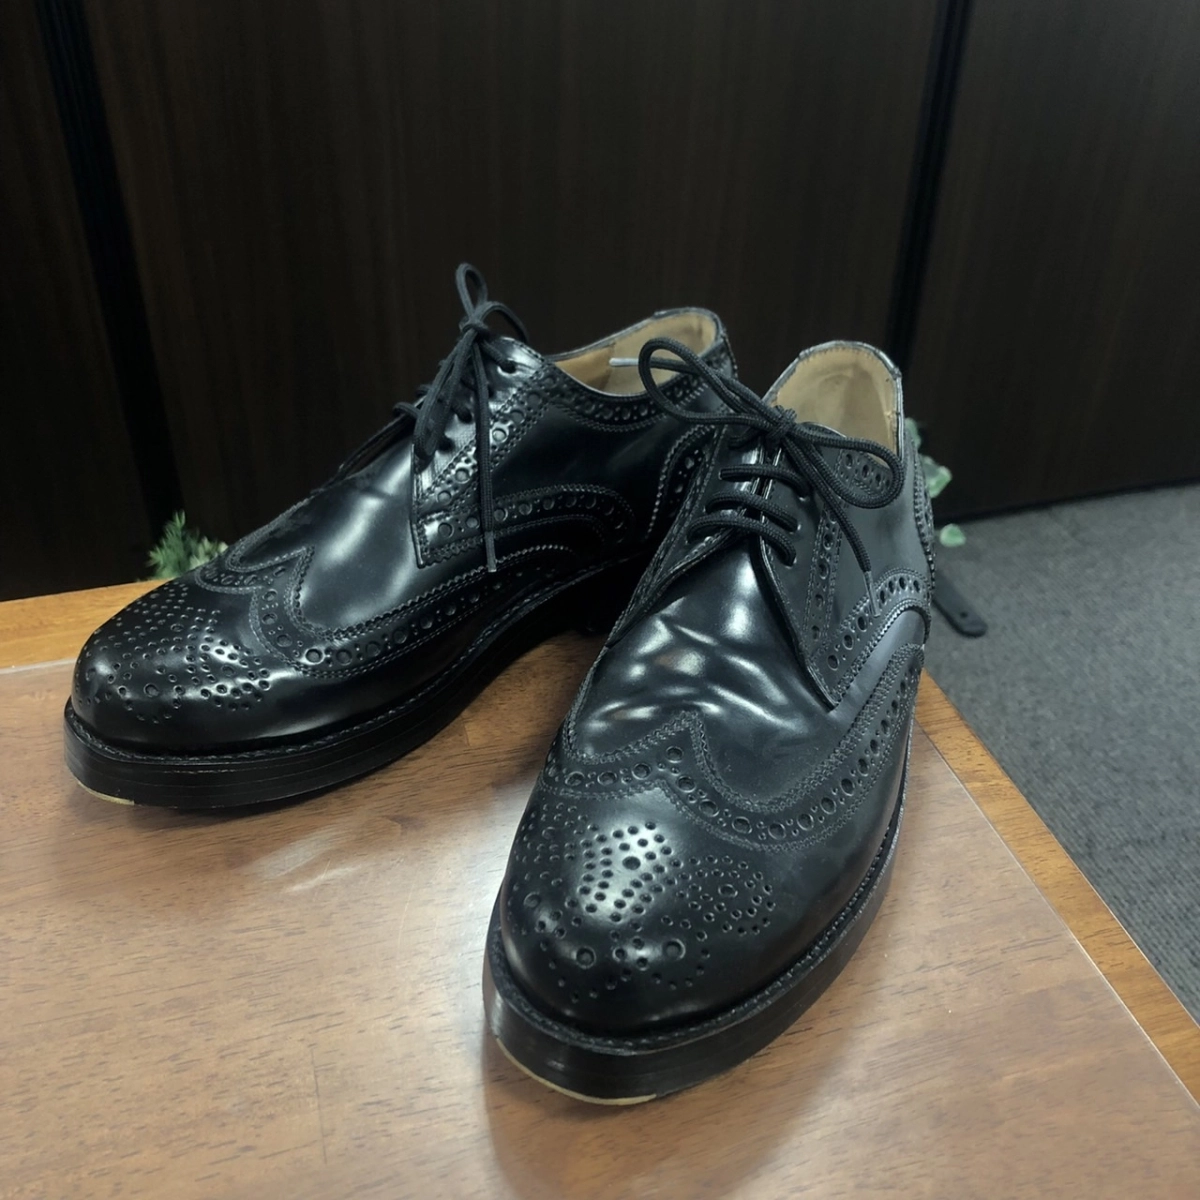 ハインリッヒディンケラッカーのブラック シェルコードバン RIO・リオ フルブローグレザーシューズ・革靴 3087 4318の買取実績です。